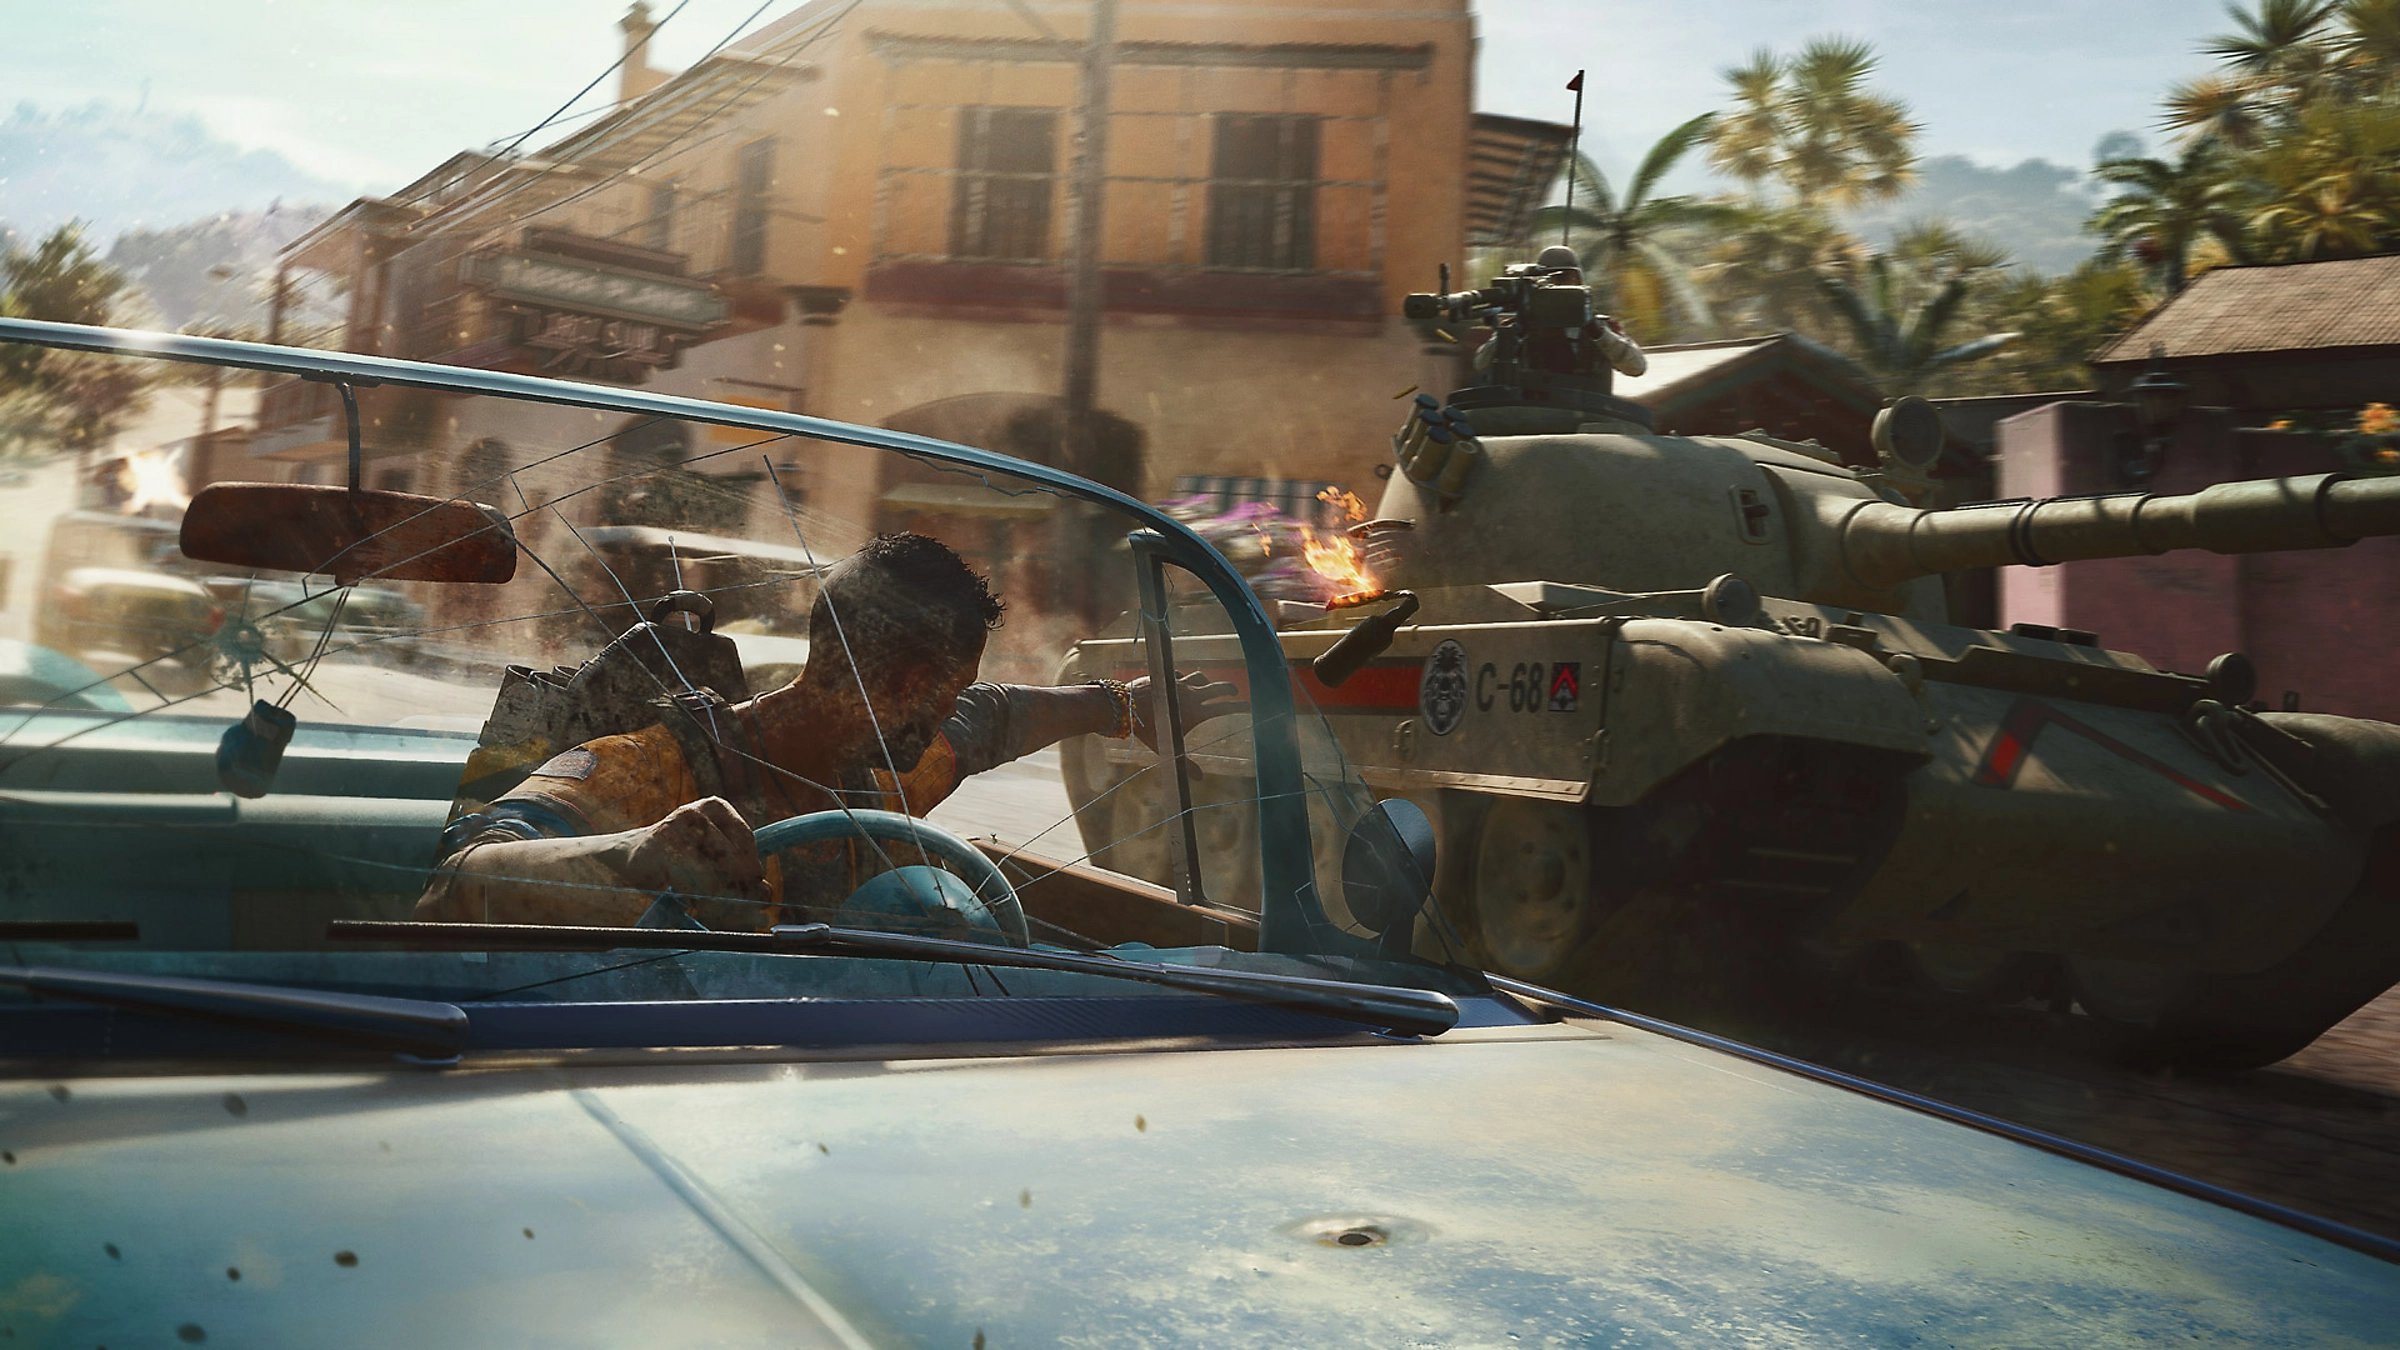 Xbox Game Pass dá as Boas-vindas a Far Cry 6: Uma Mudança de Jogo